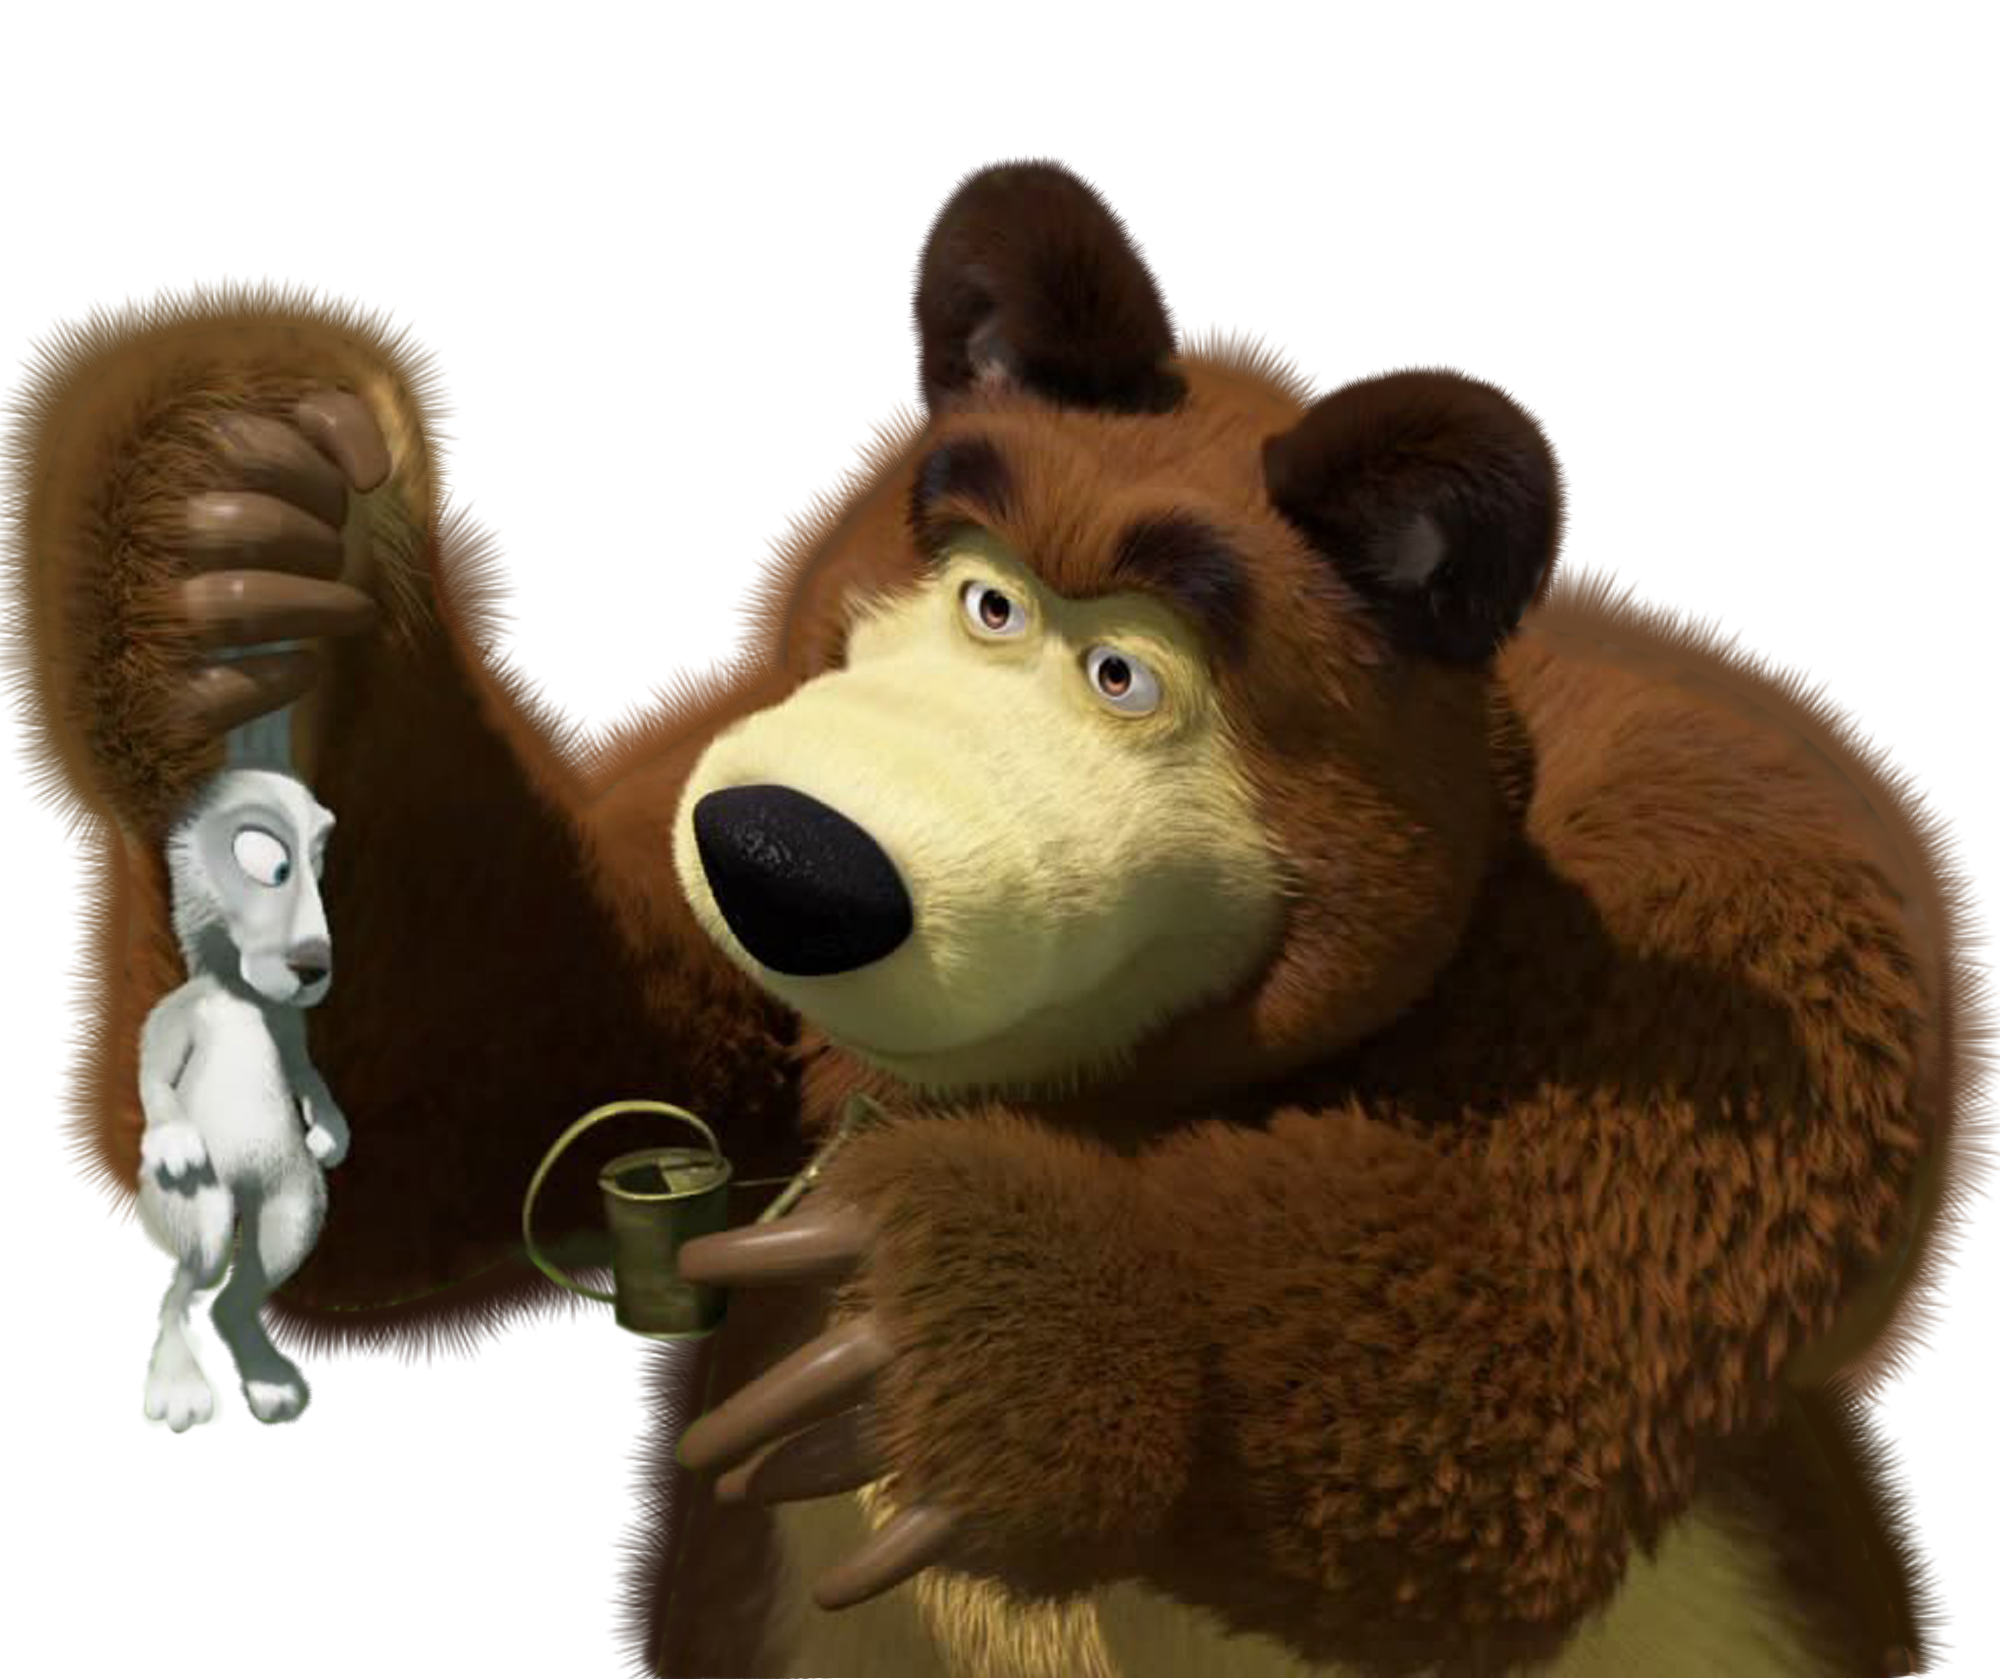 Histed masha and bear. Маша и медведь медведь. Миша с мультика Маша и медведь. Медведь из Маши и медведя. Медведь из мультика Маша и медведь.